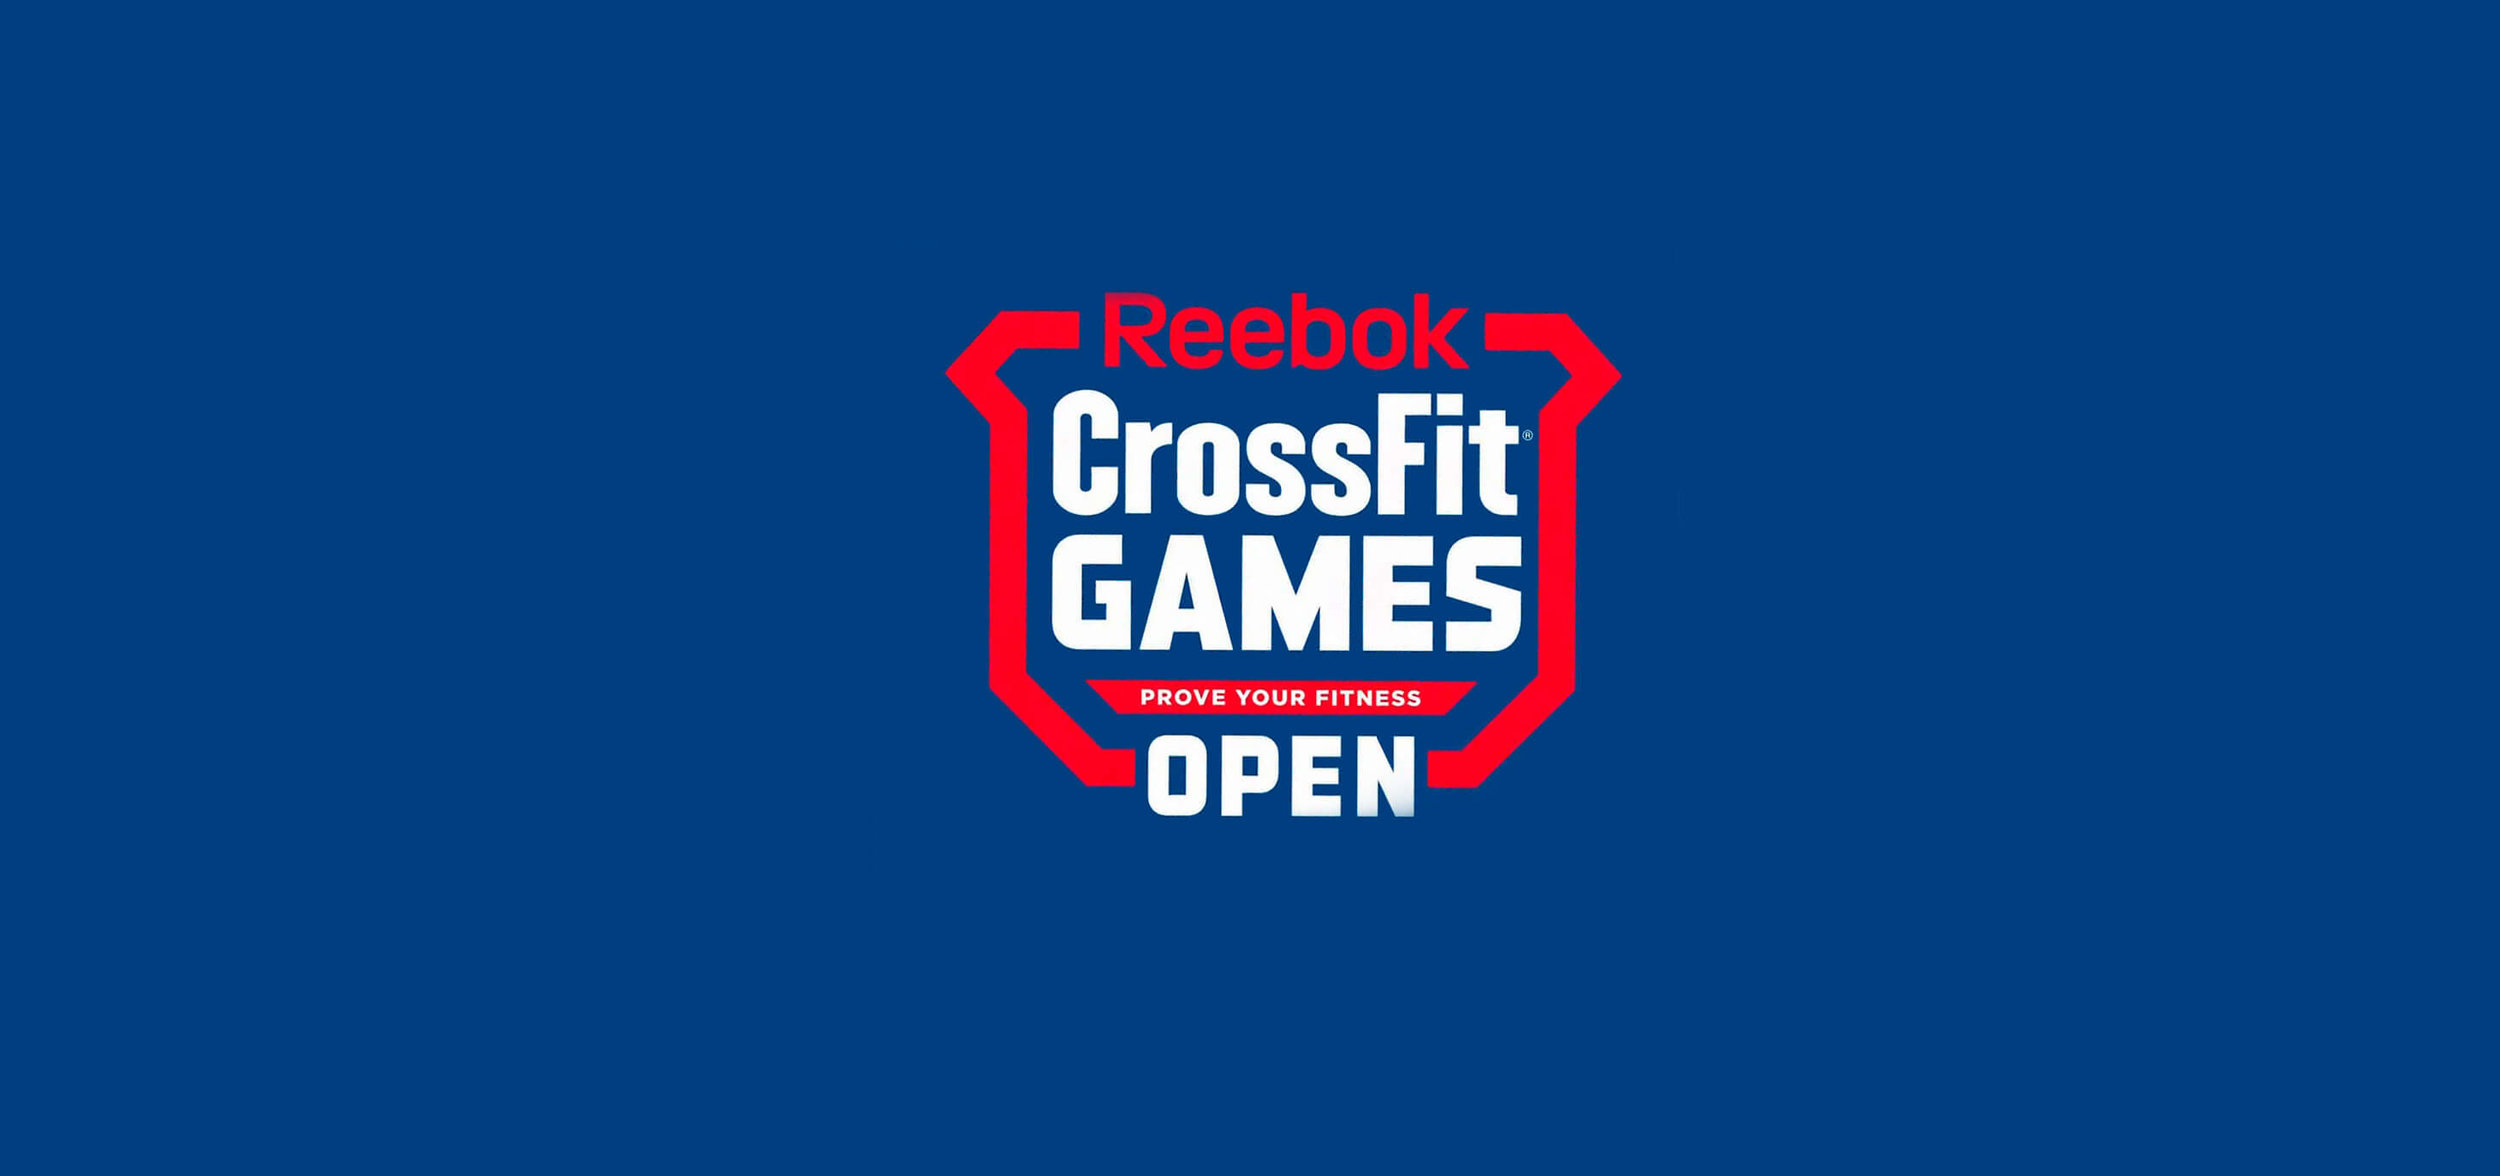 reebok crossfit open games